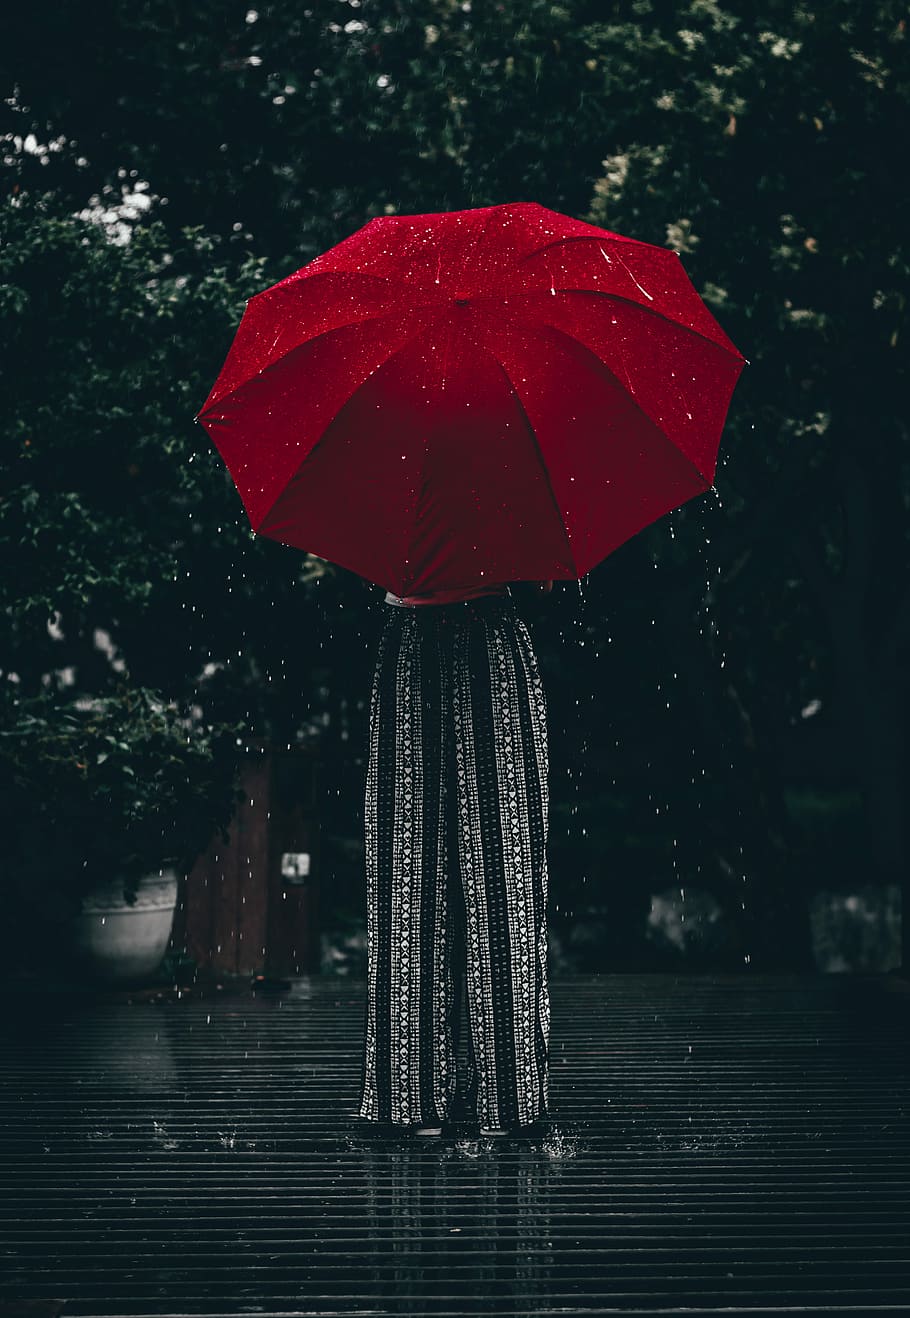 Đầy phong cách và sành điệu, chiếc ô đỏ sẽ mang đến cho bạn một trải nghiệm đi mưa vô cùng thú vị. Hãy nhấp chuột để khám phá bức ảnh liên quan đến chiếc ô đỏ này!